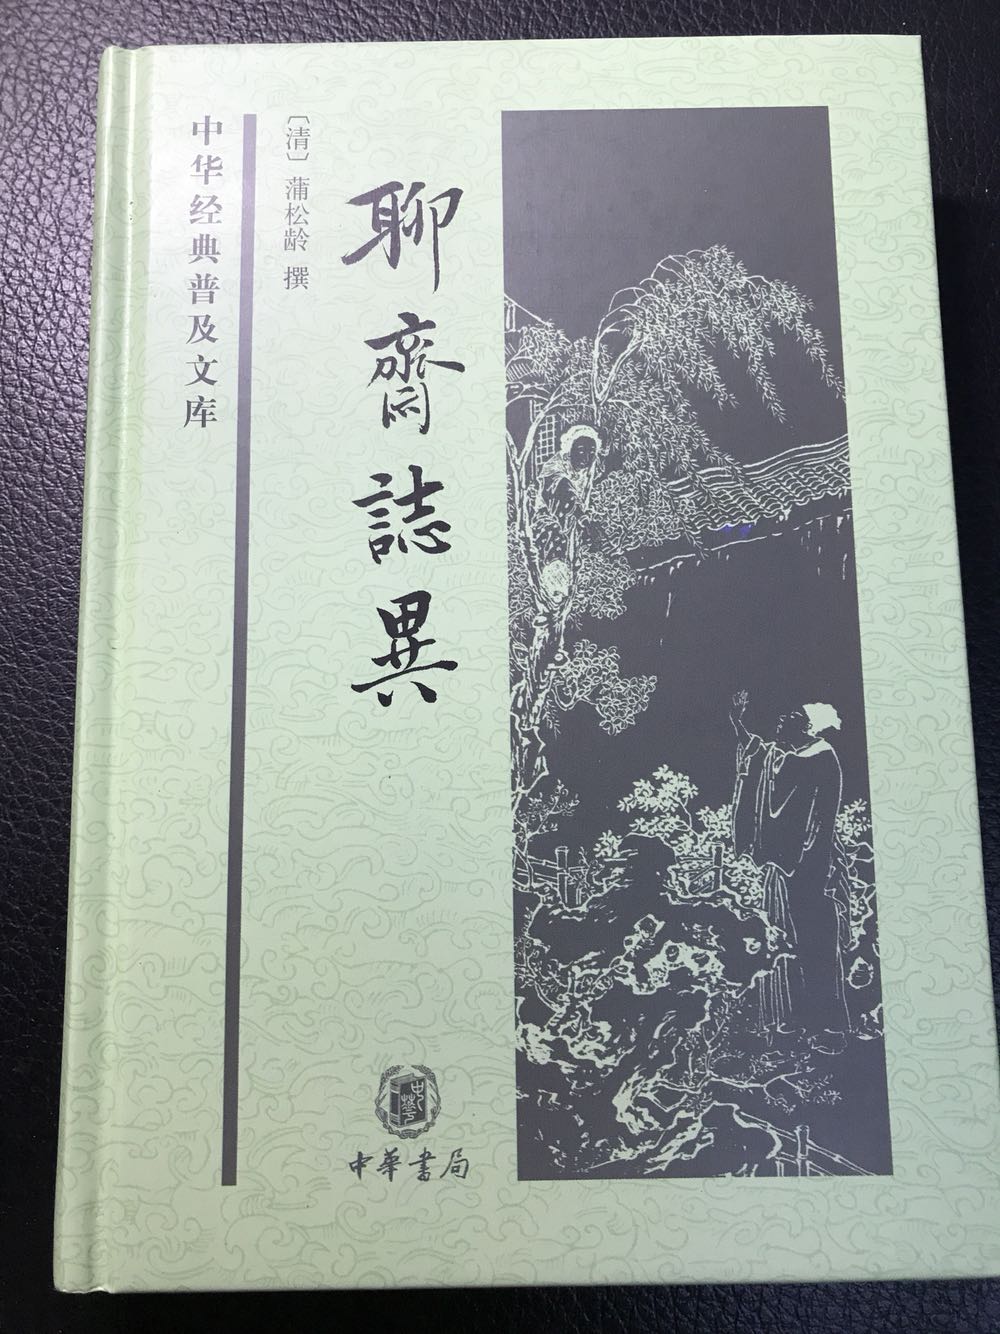 中华书局的书包装都不错，不过纸张偏薄，不方便笔记。